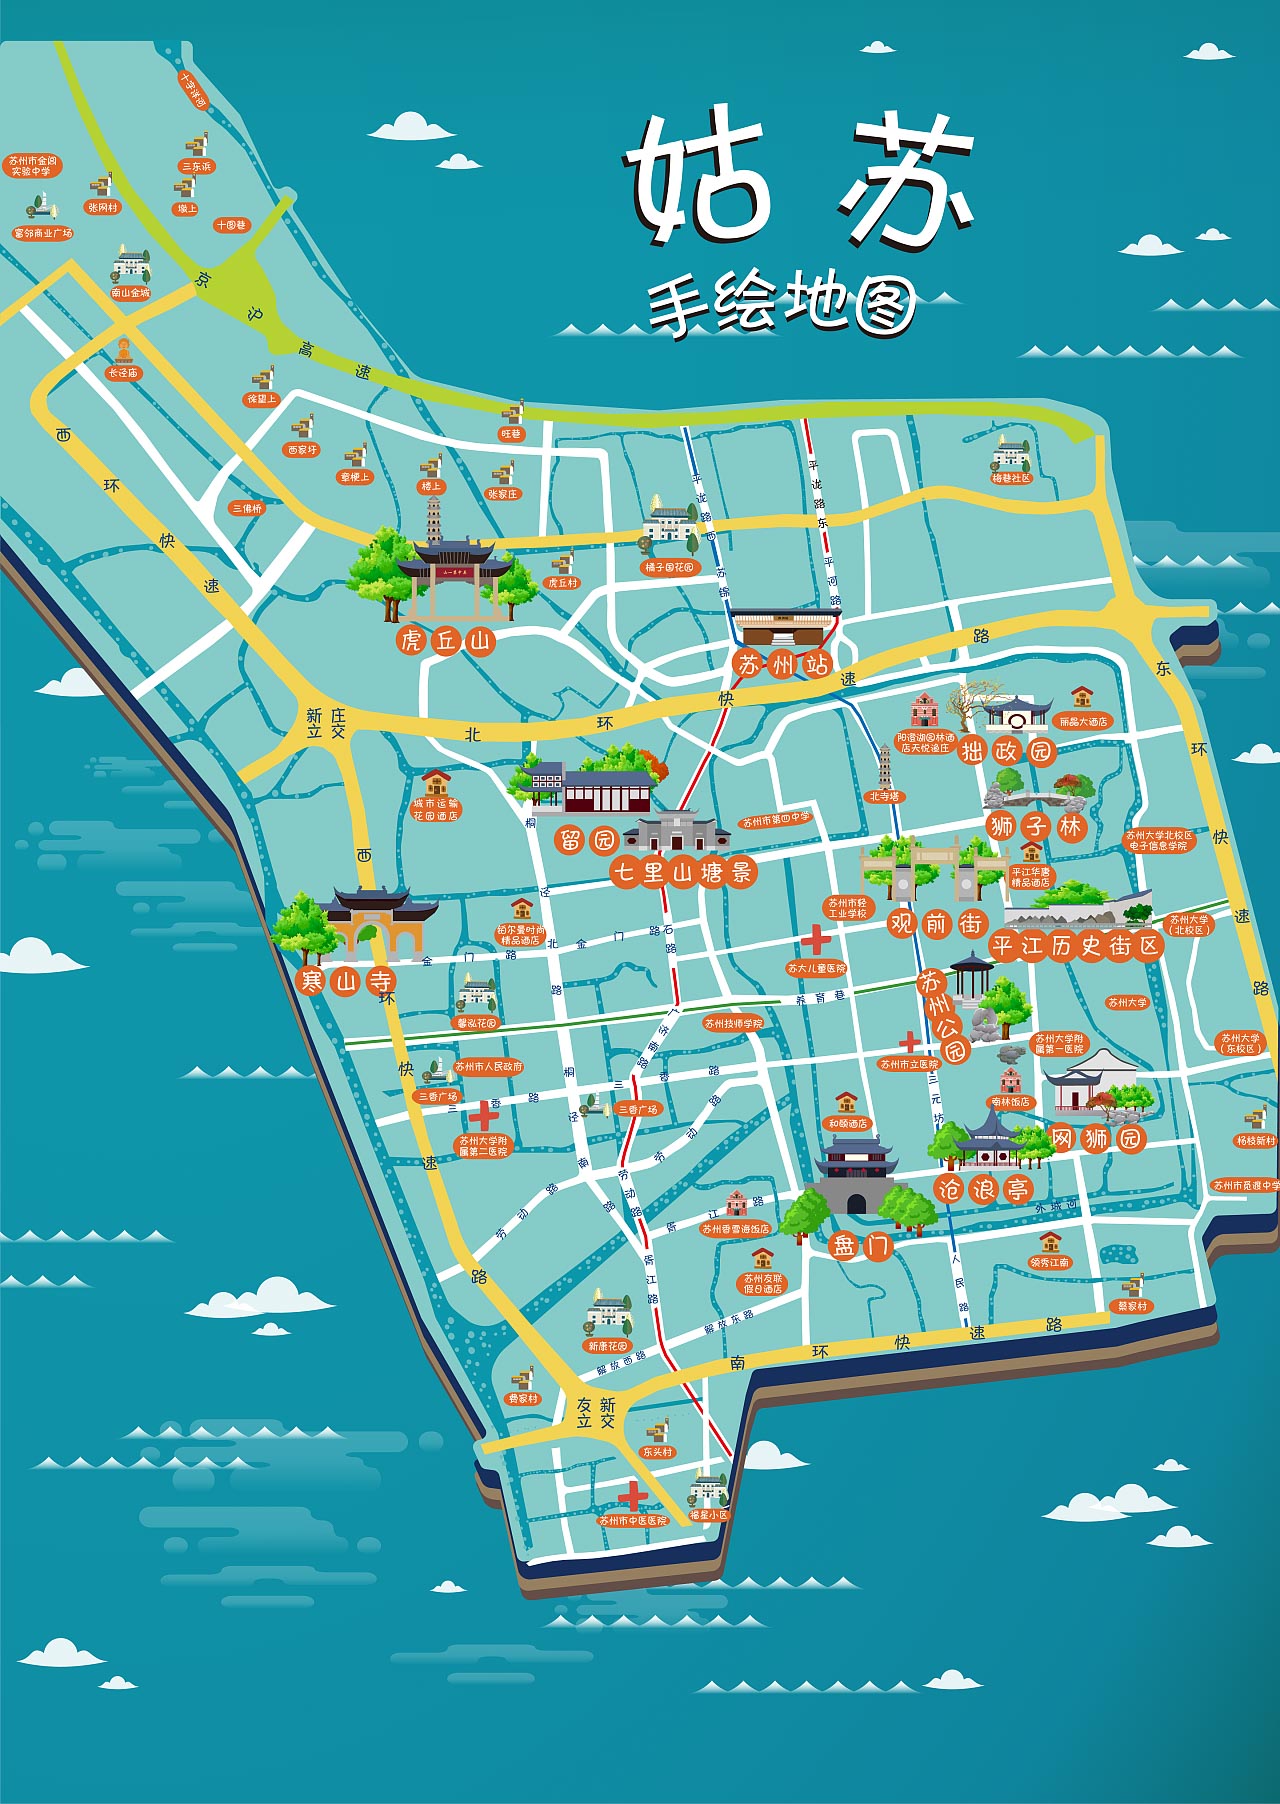 坦洲镇手绘地图景区的文化宝藏